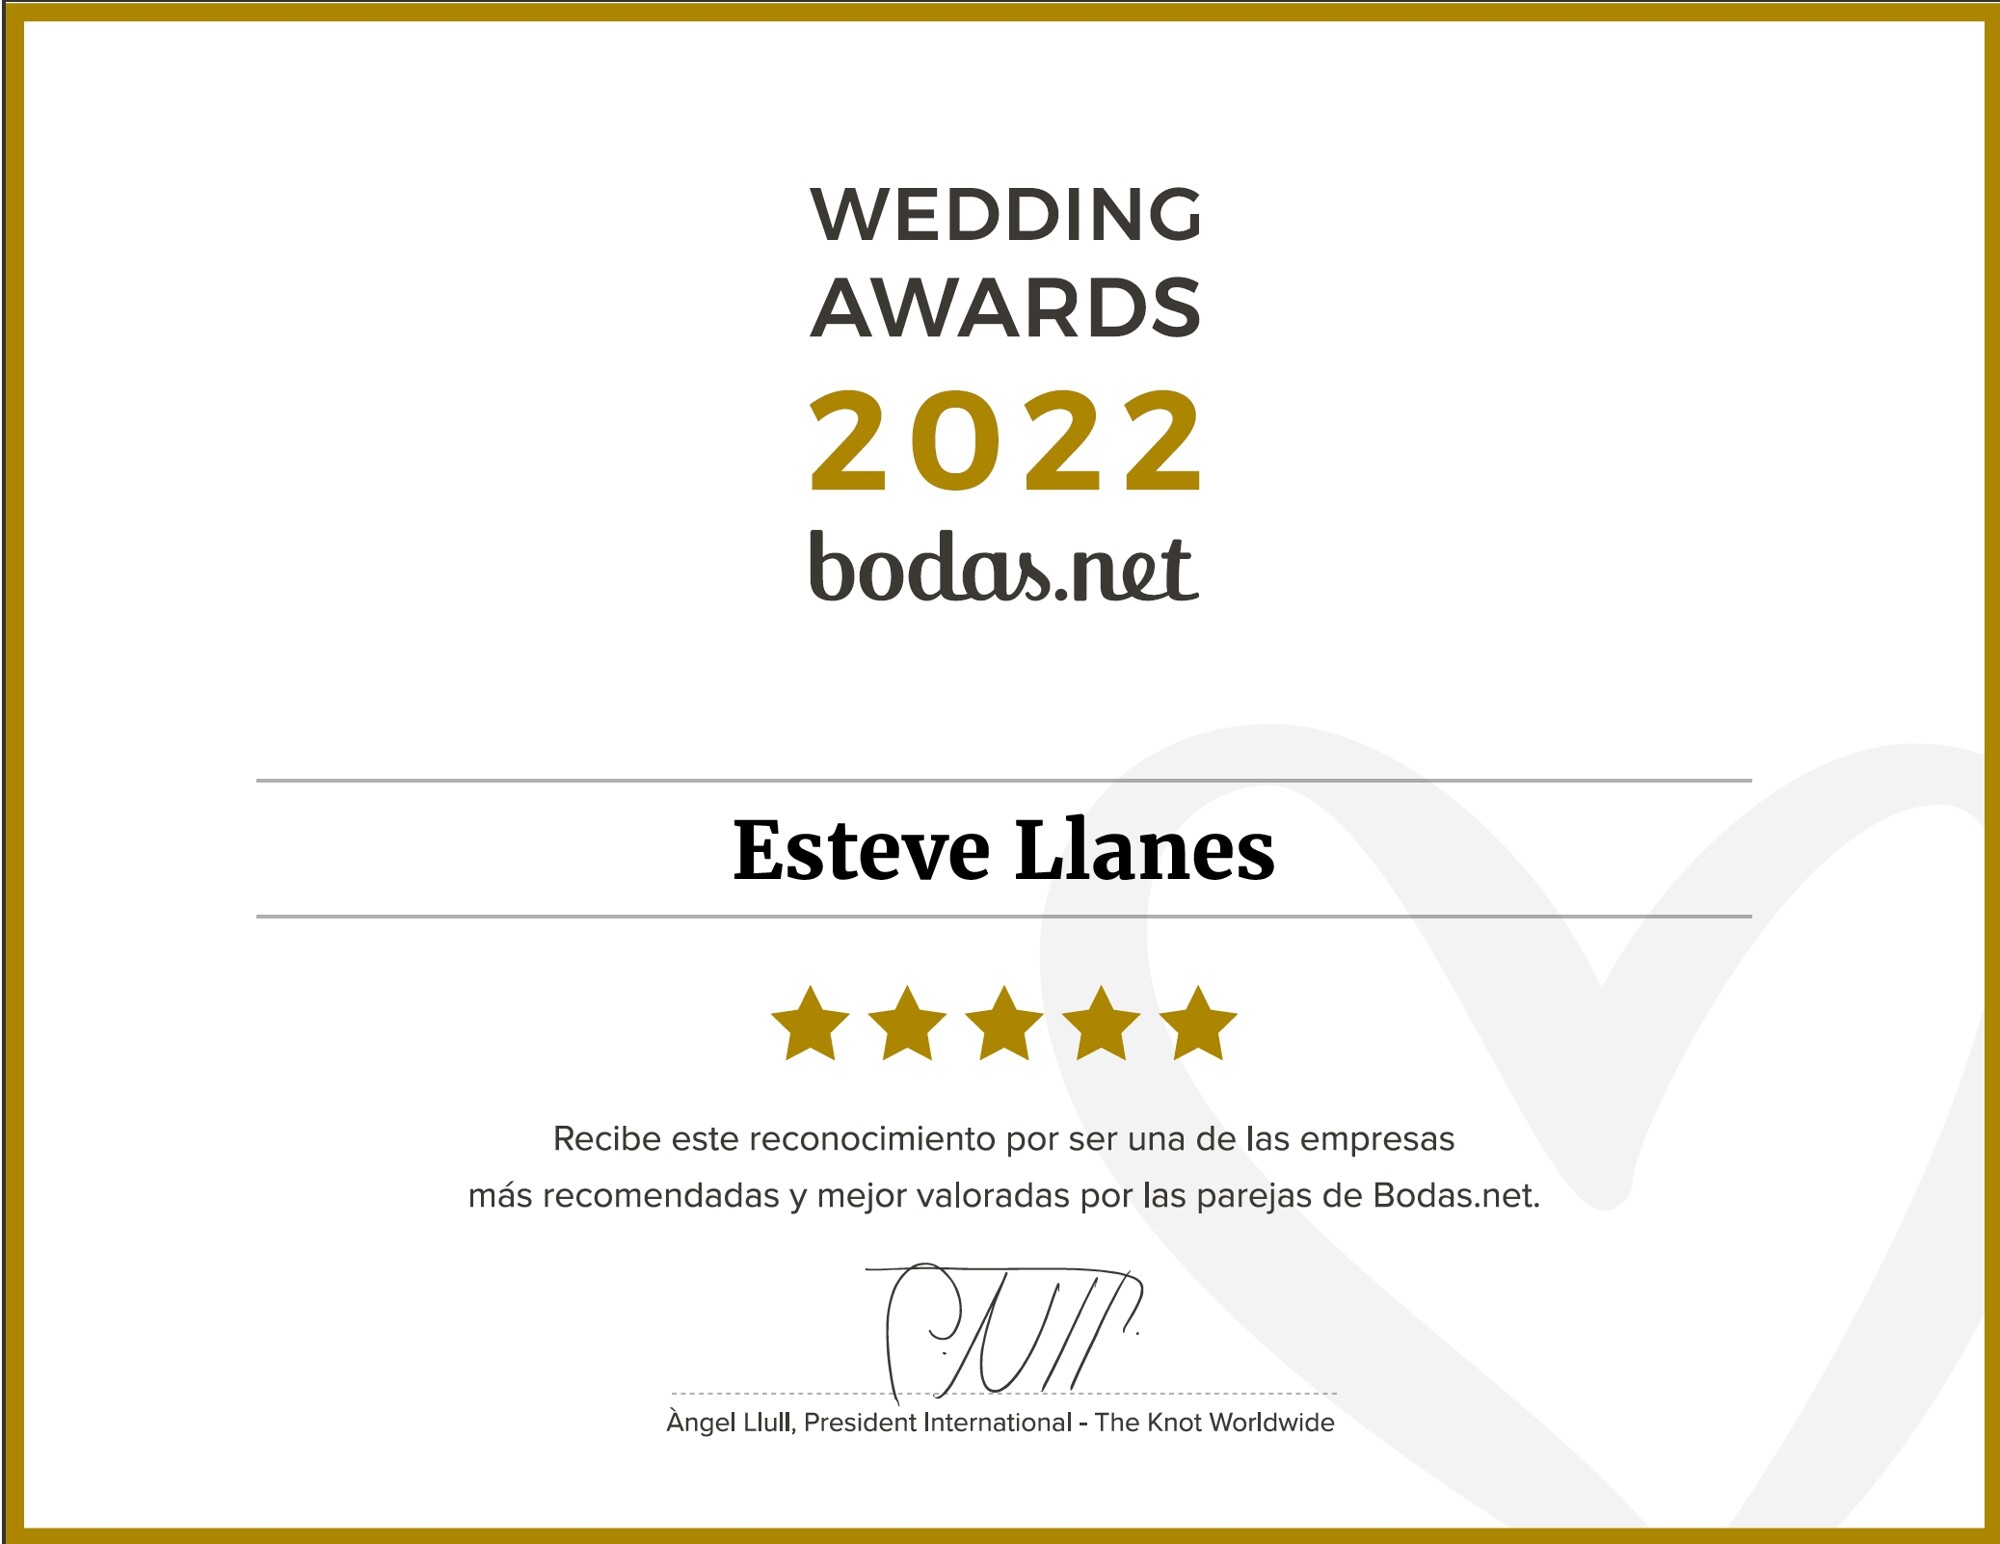 Esteve LLanes - wedding-awards-2022.jpg